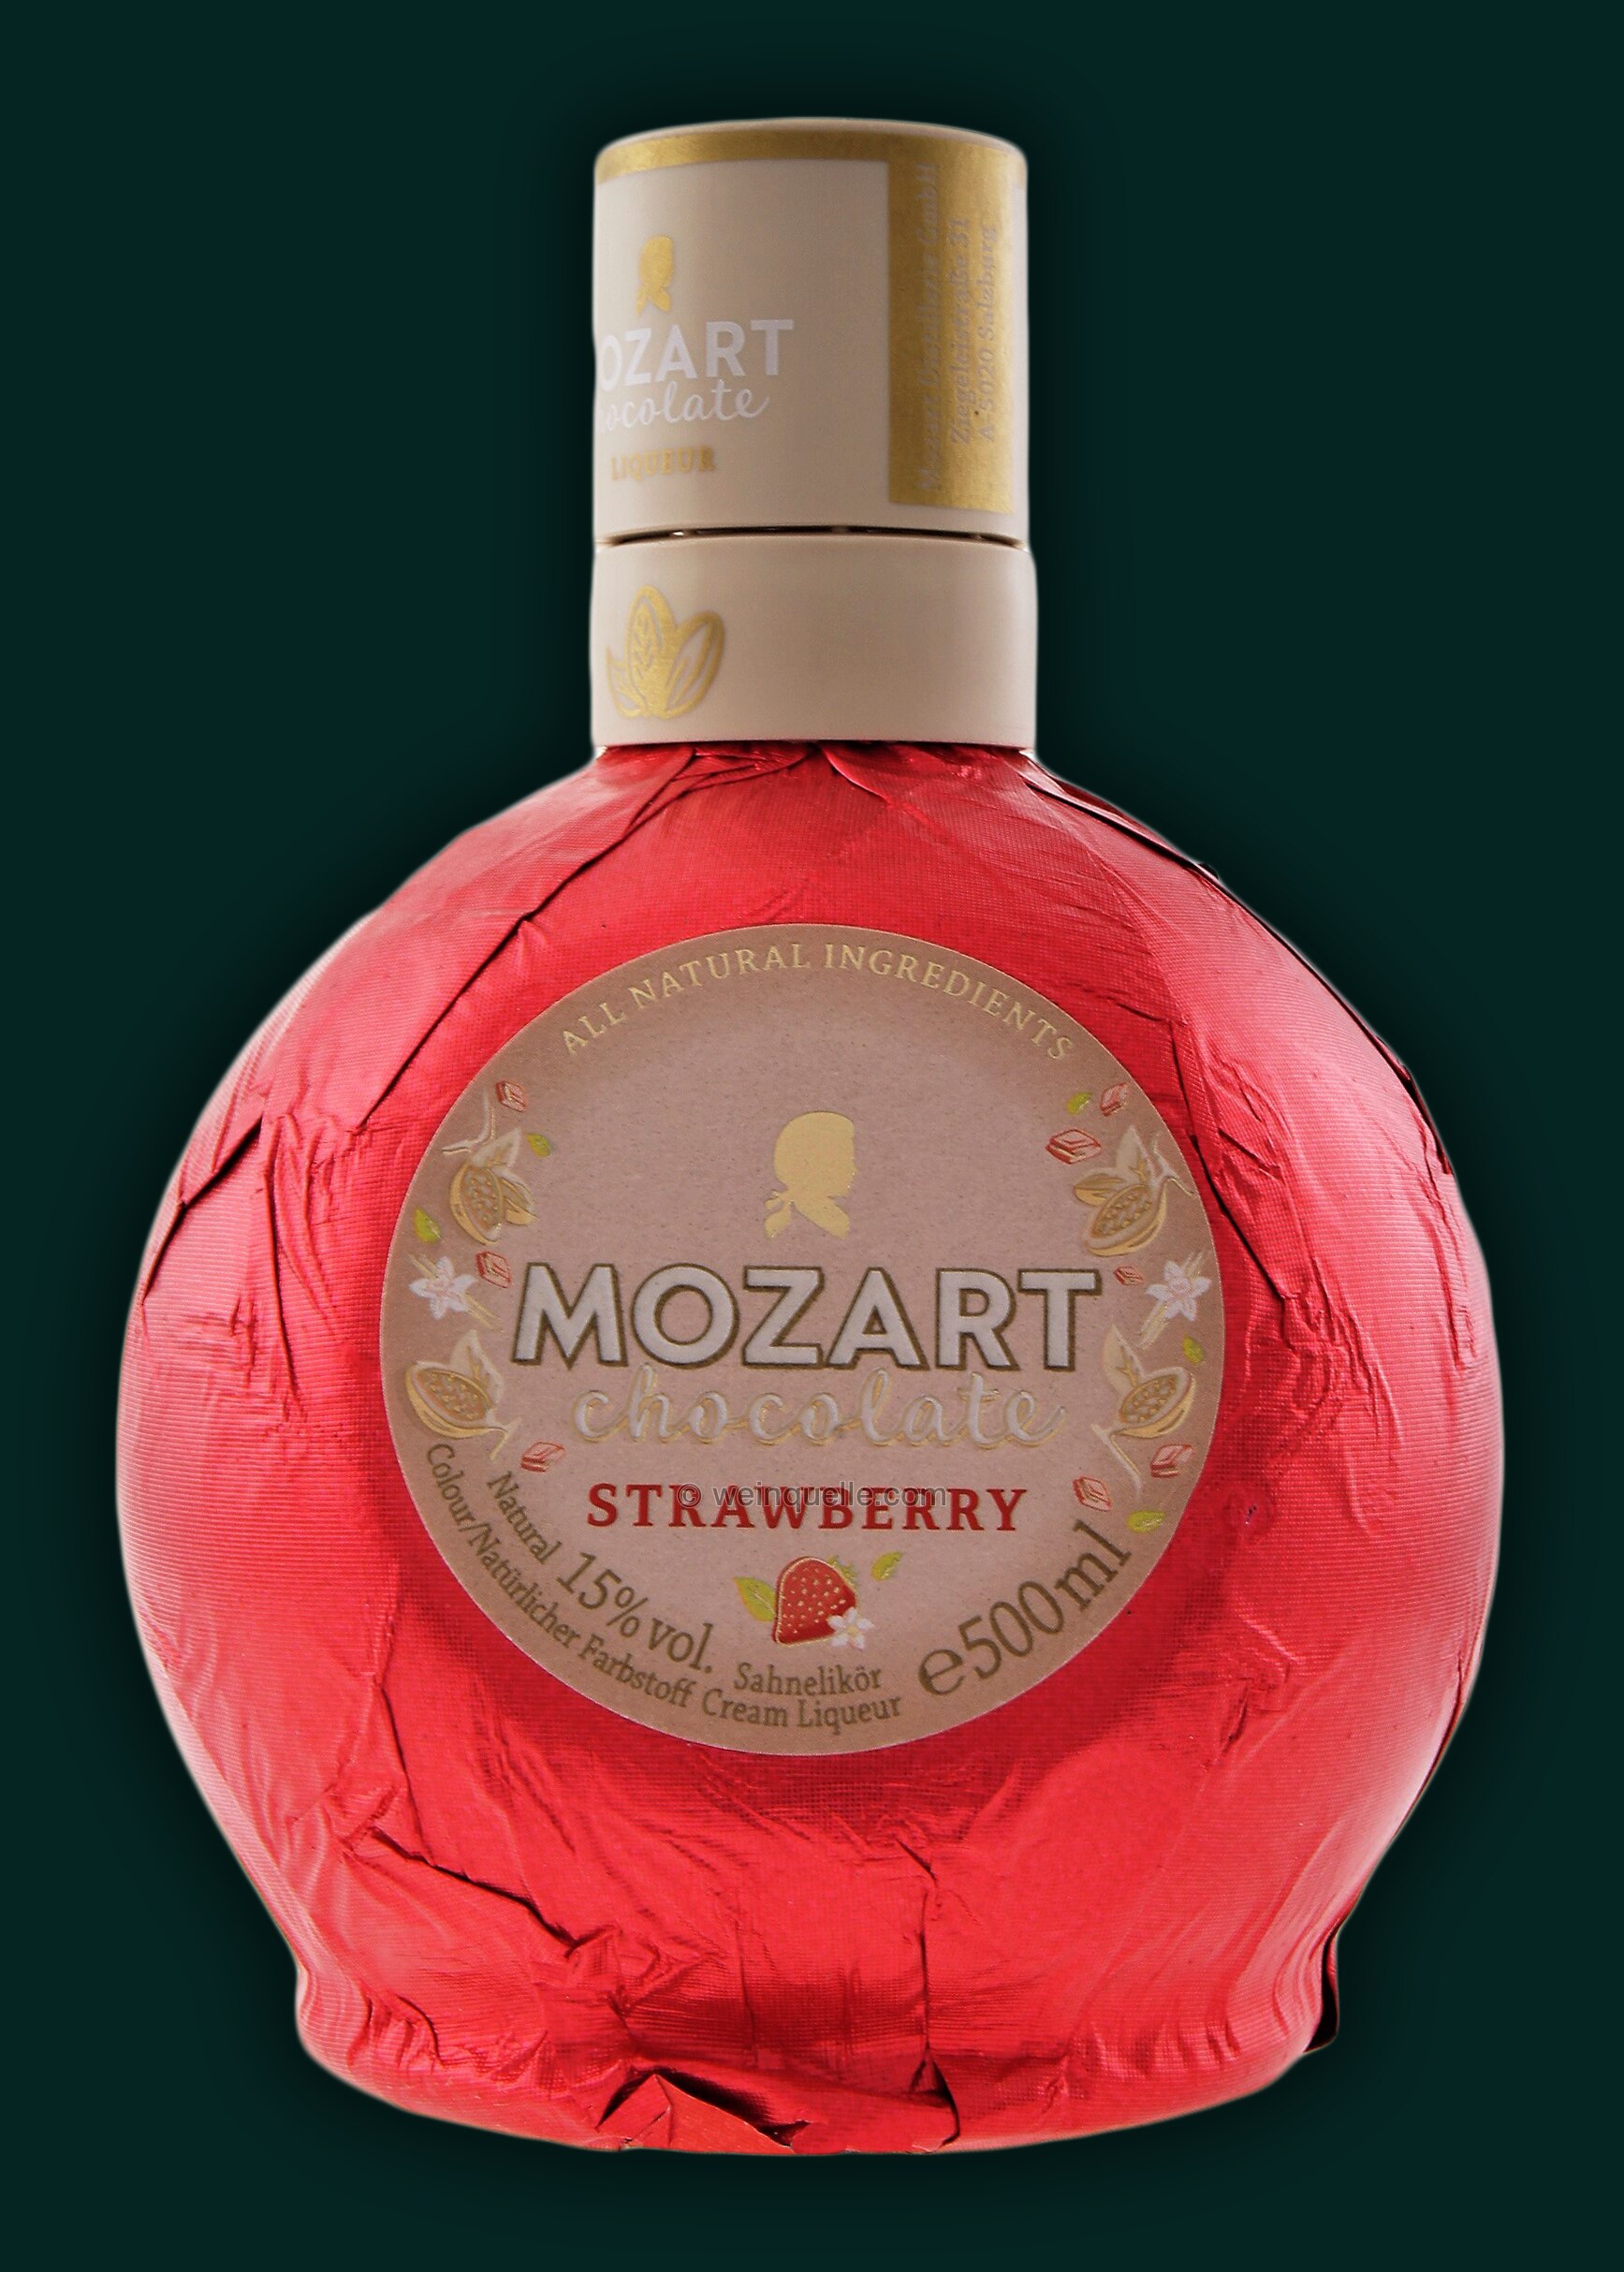 13,75 White - € Strawberry Liter, Chocolate Mozart Cream 0,5 Lühmann Weinquelle